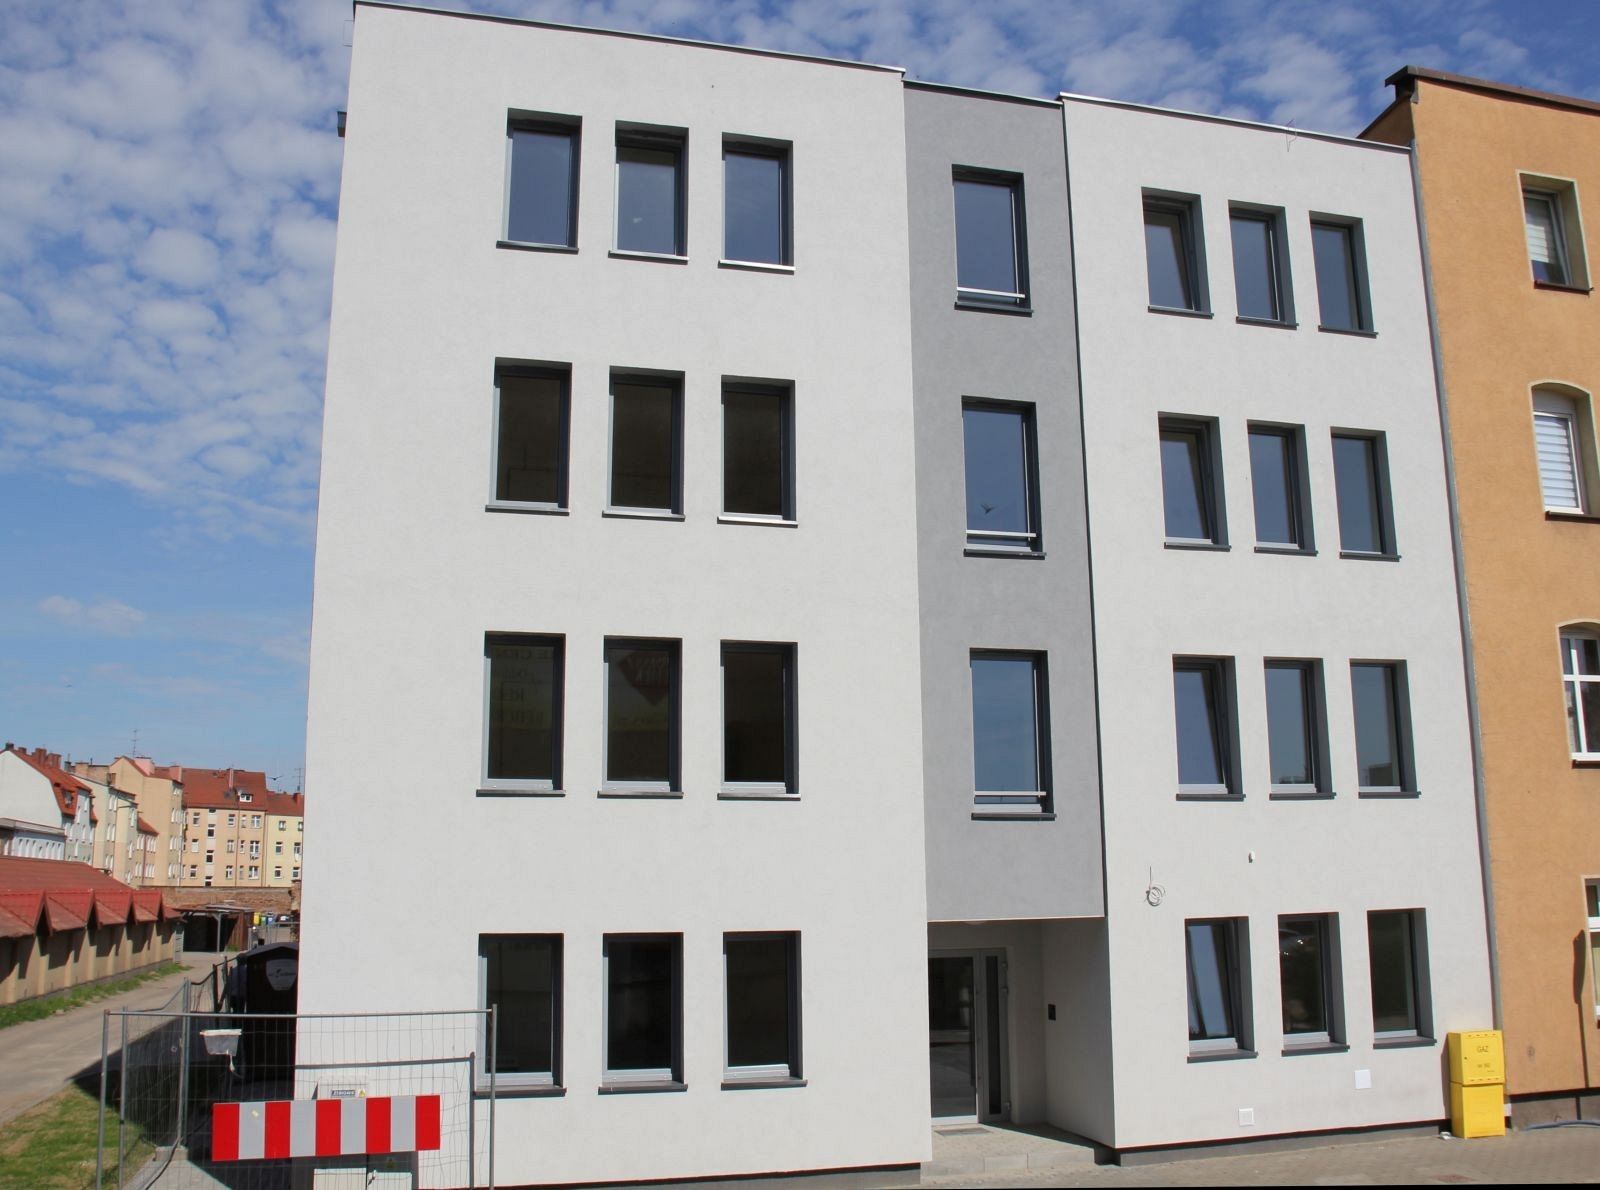 Nowy budynek komunalny przy Grunwaldzkiej po